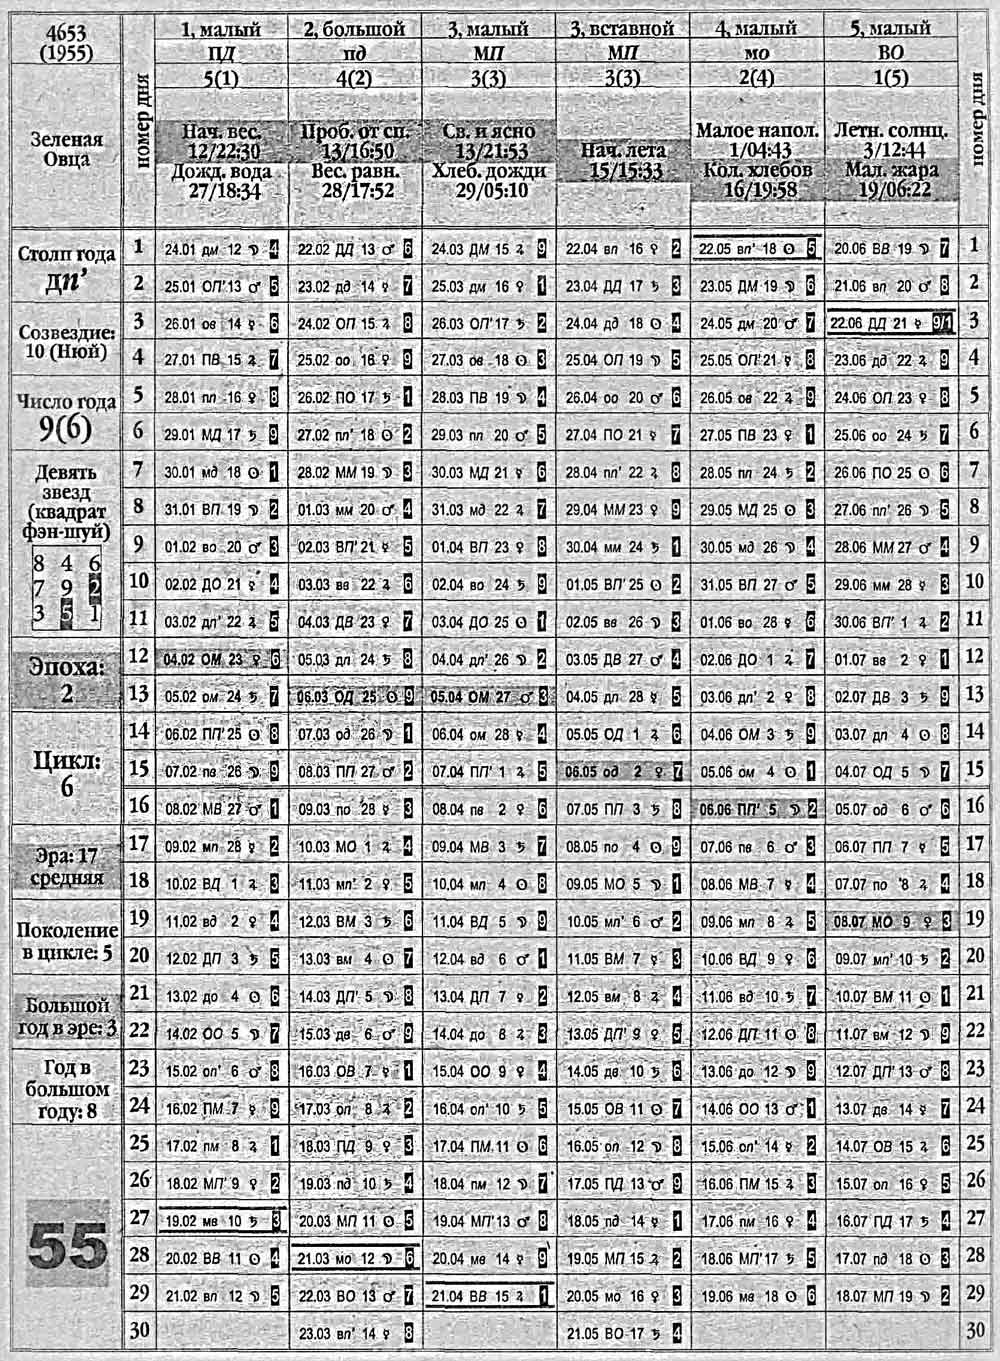 Китайский календарь 1955 года